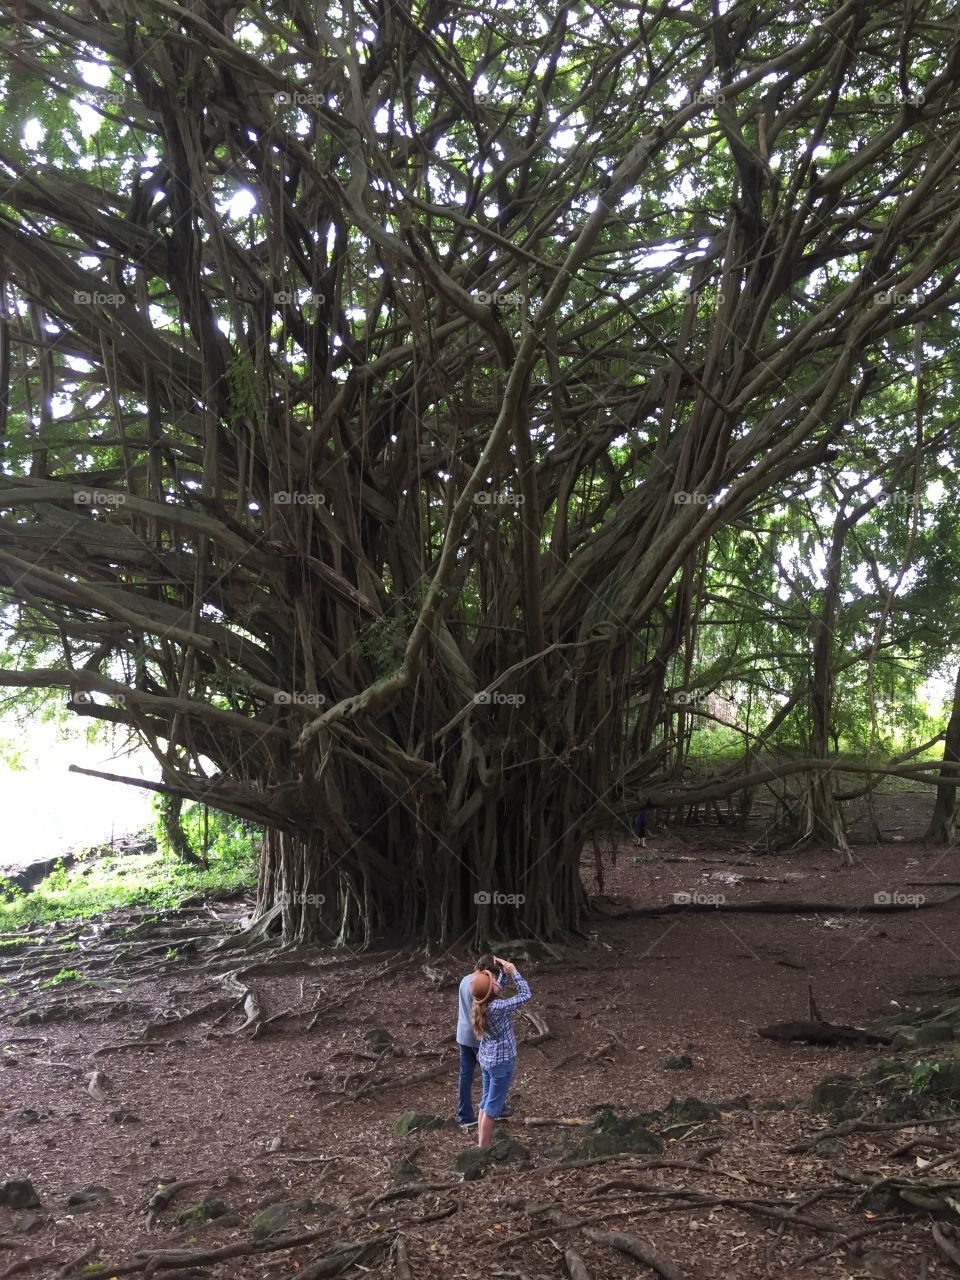 Awesome Rainforest tree Hilo Hawaii